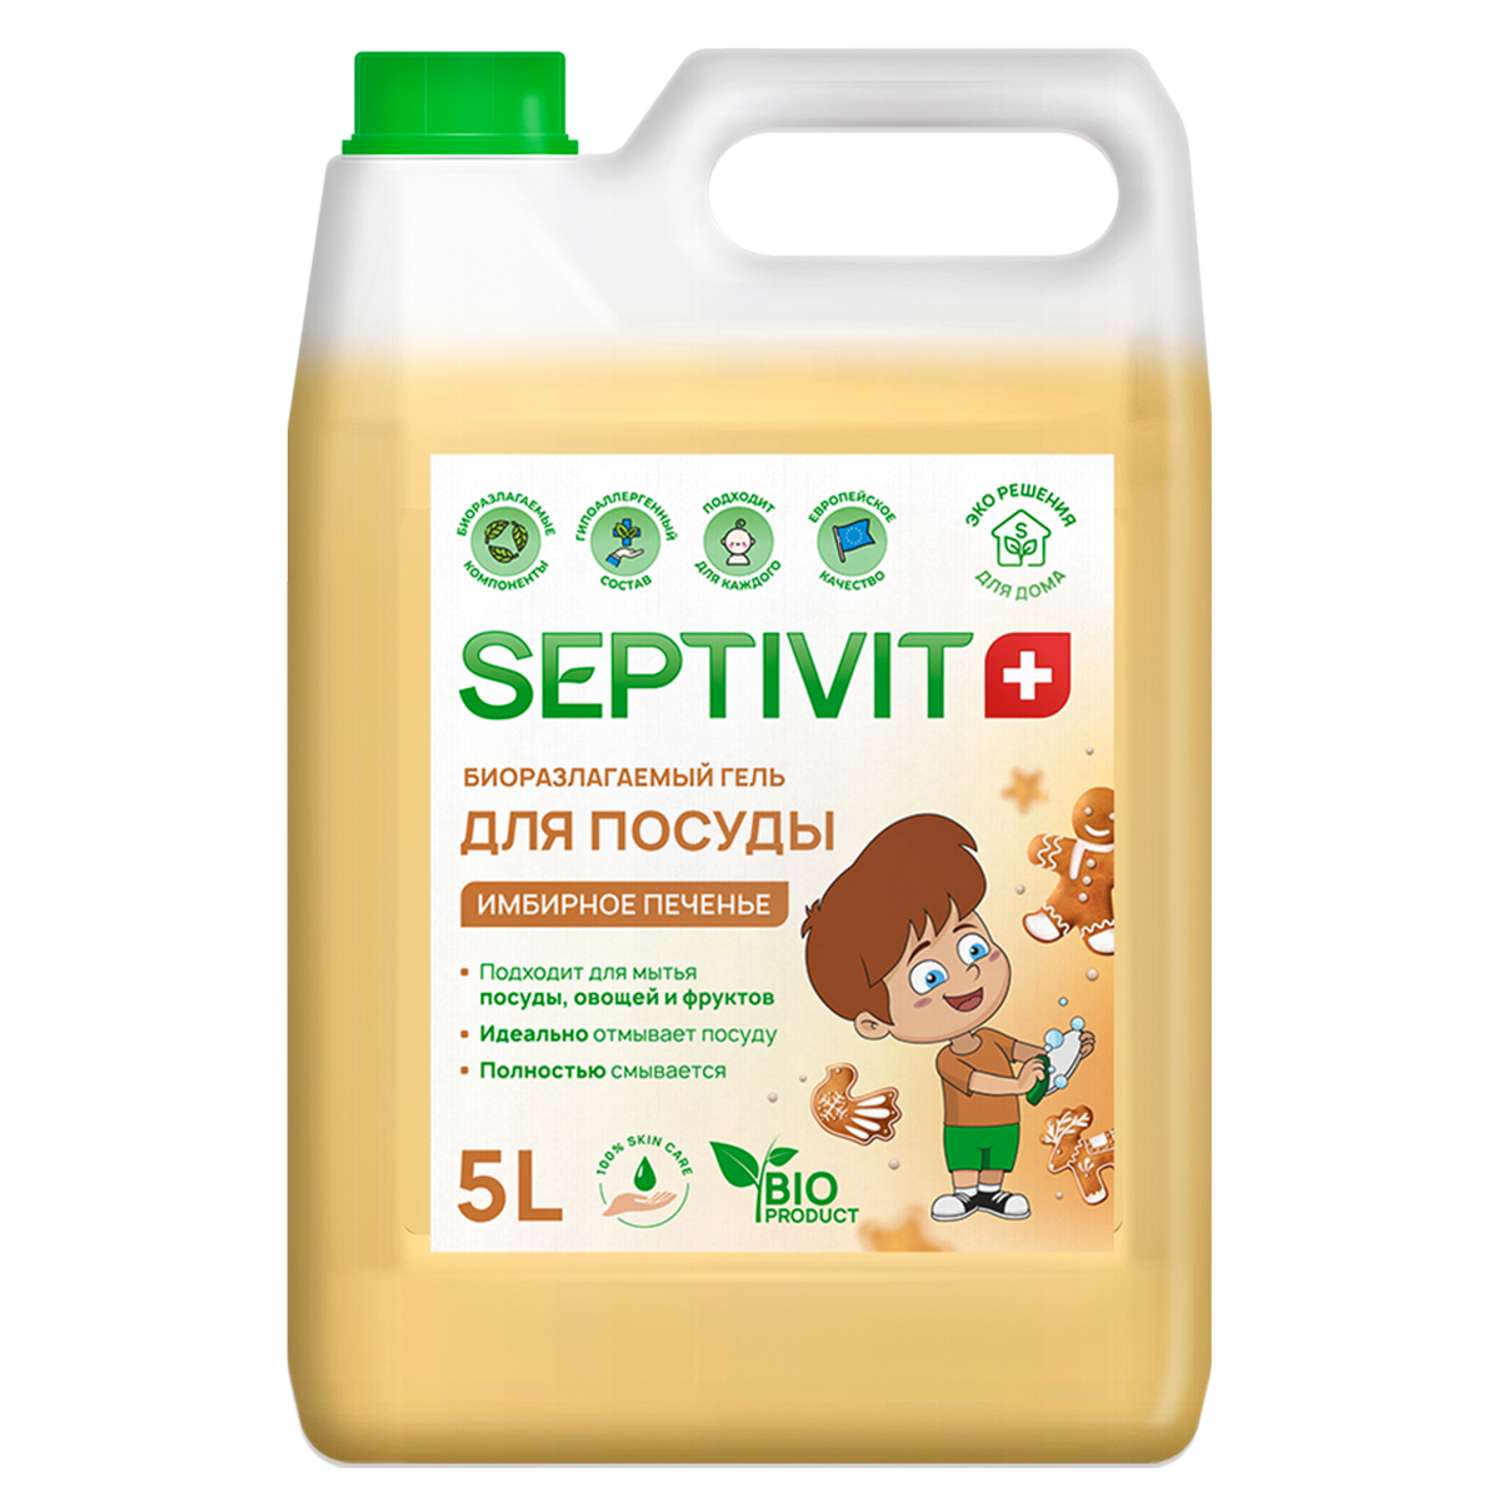 Средство для мытья посуды SEPTIVIT Premium Имбирное печенье 5л - фото 1